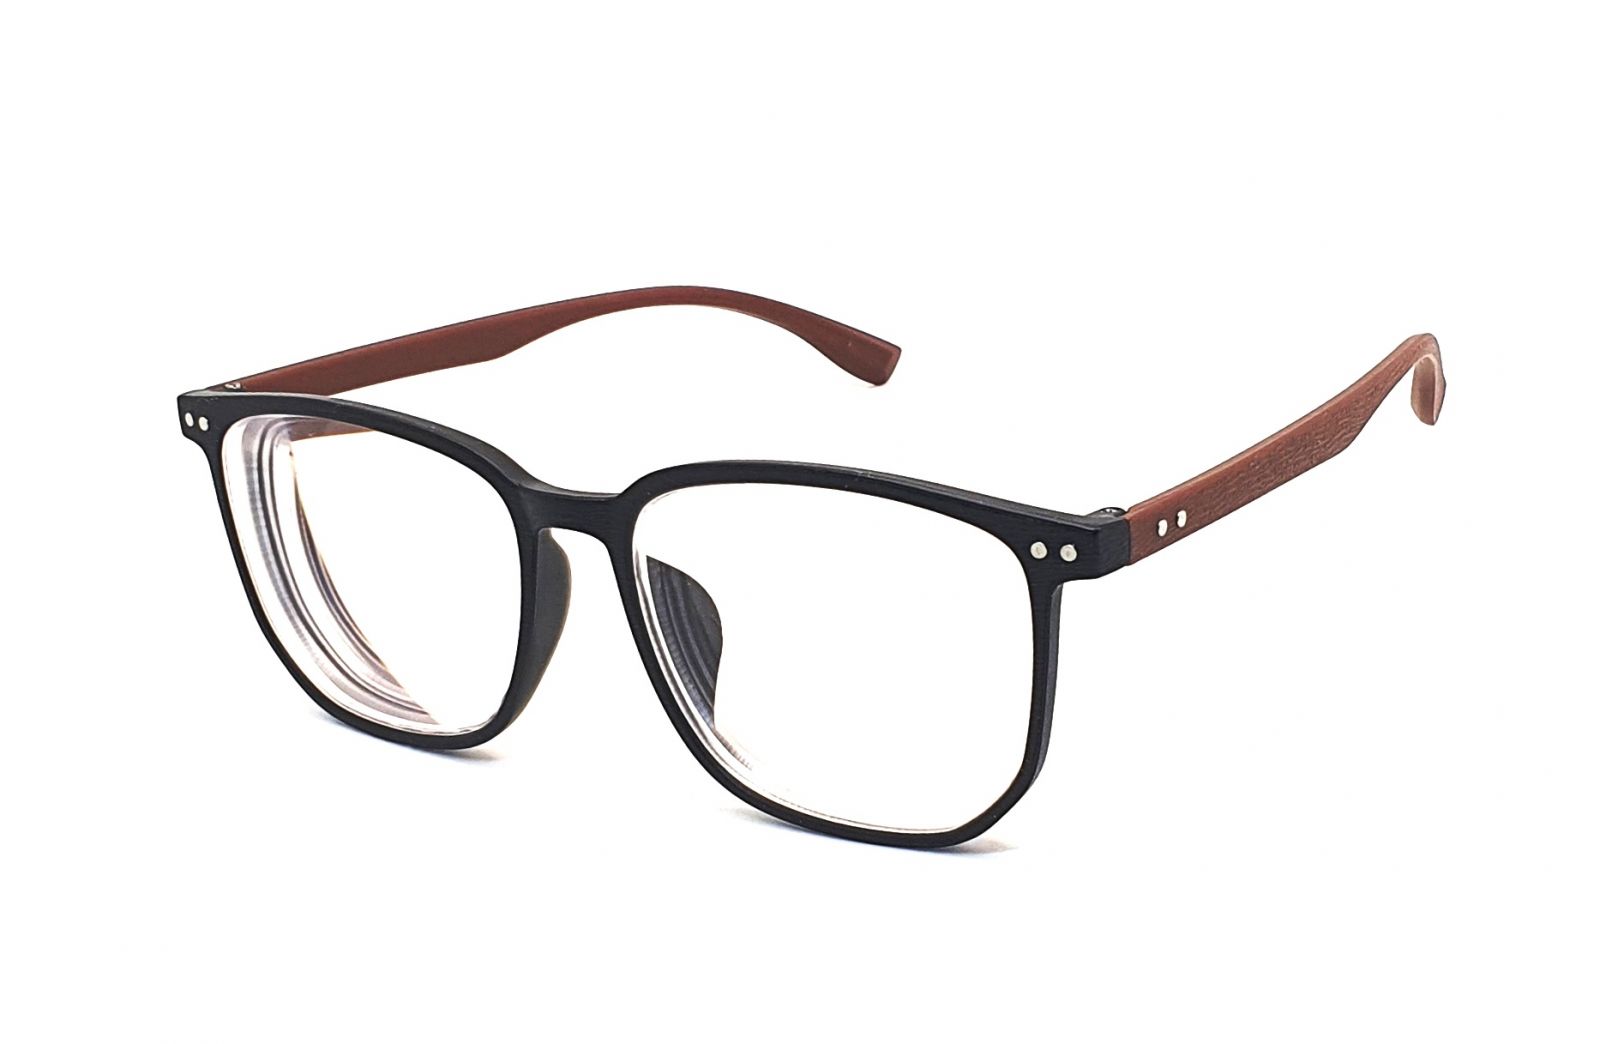 Samozabarvovací dioptrické brýle F23 / -4,50 black/brown